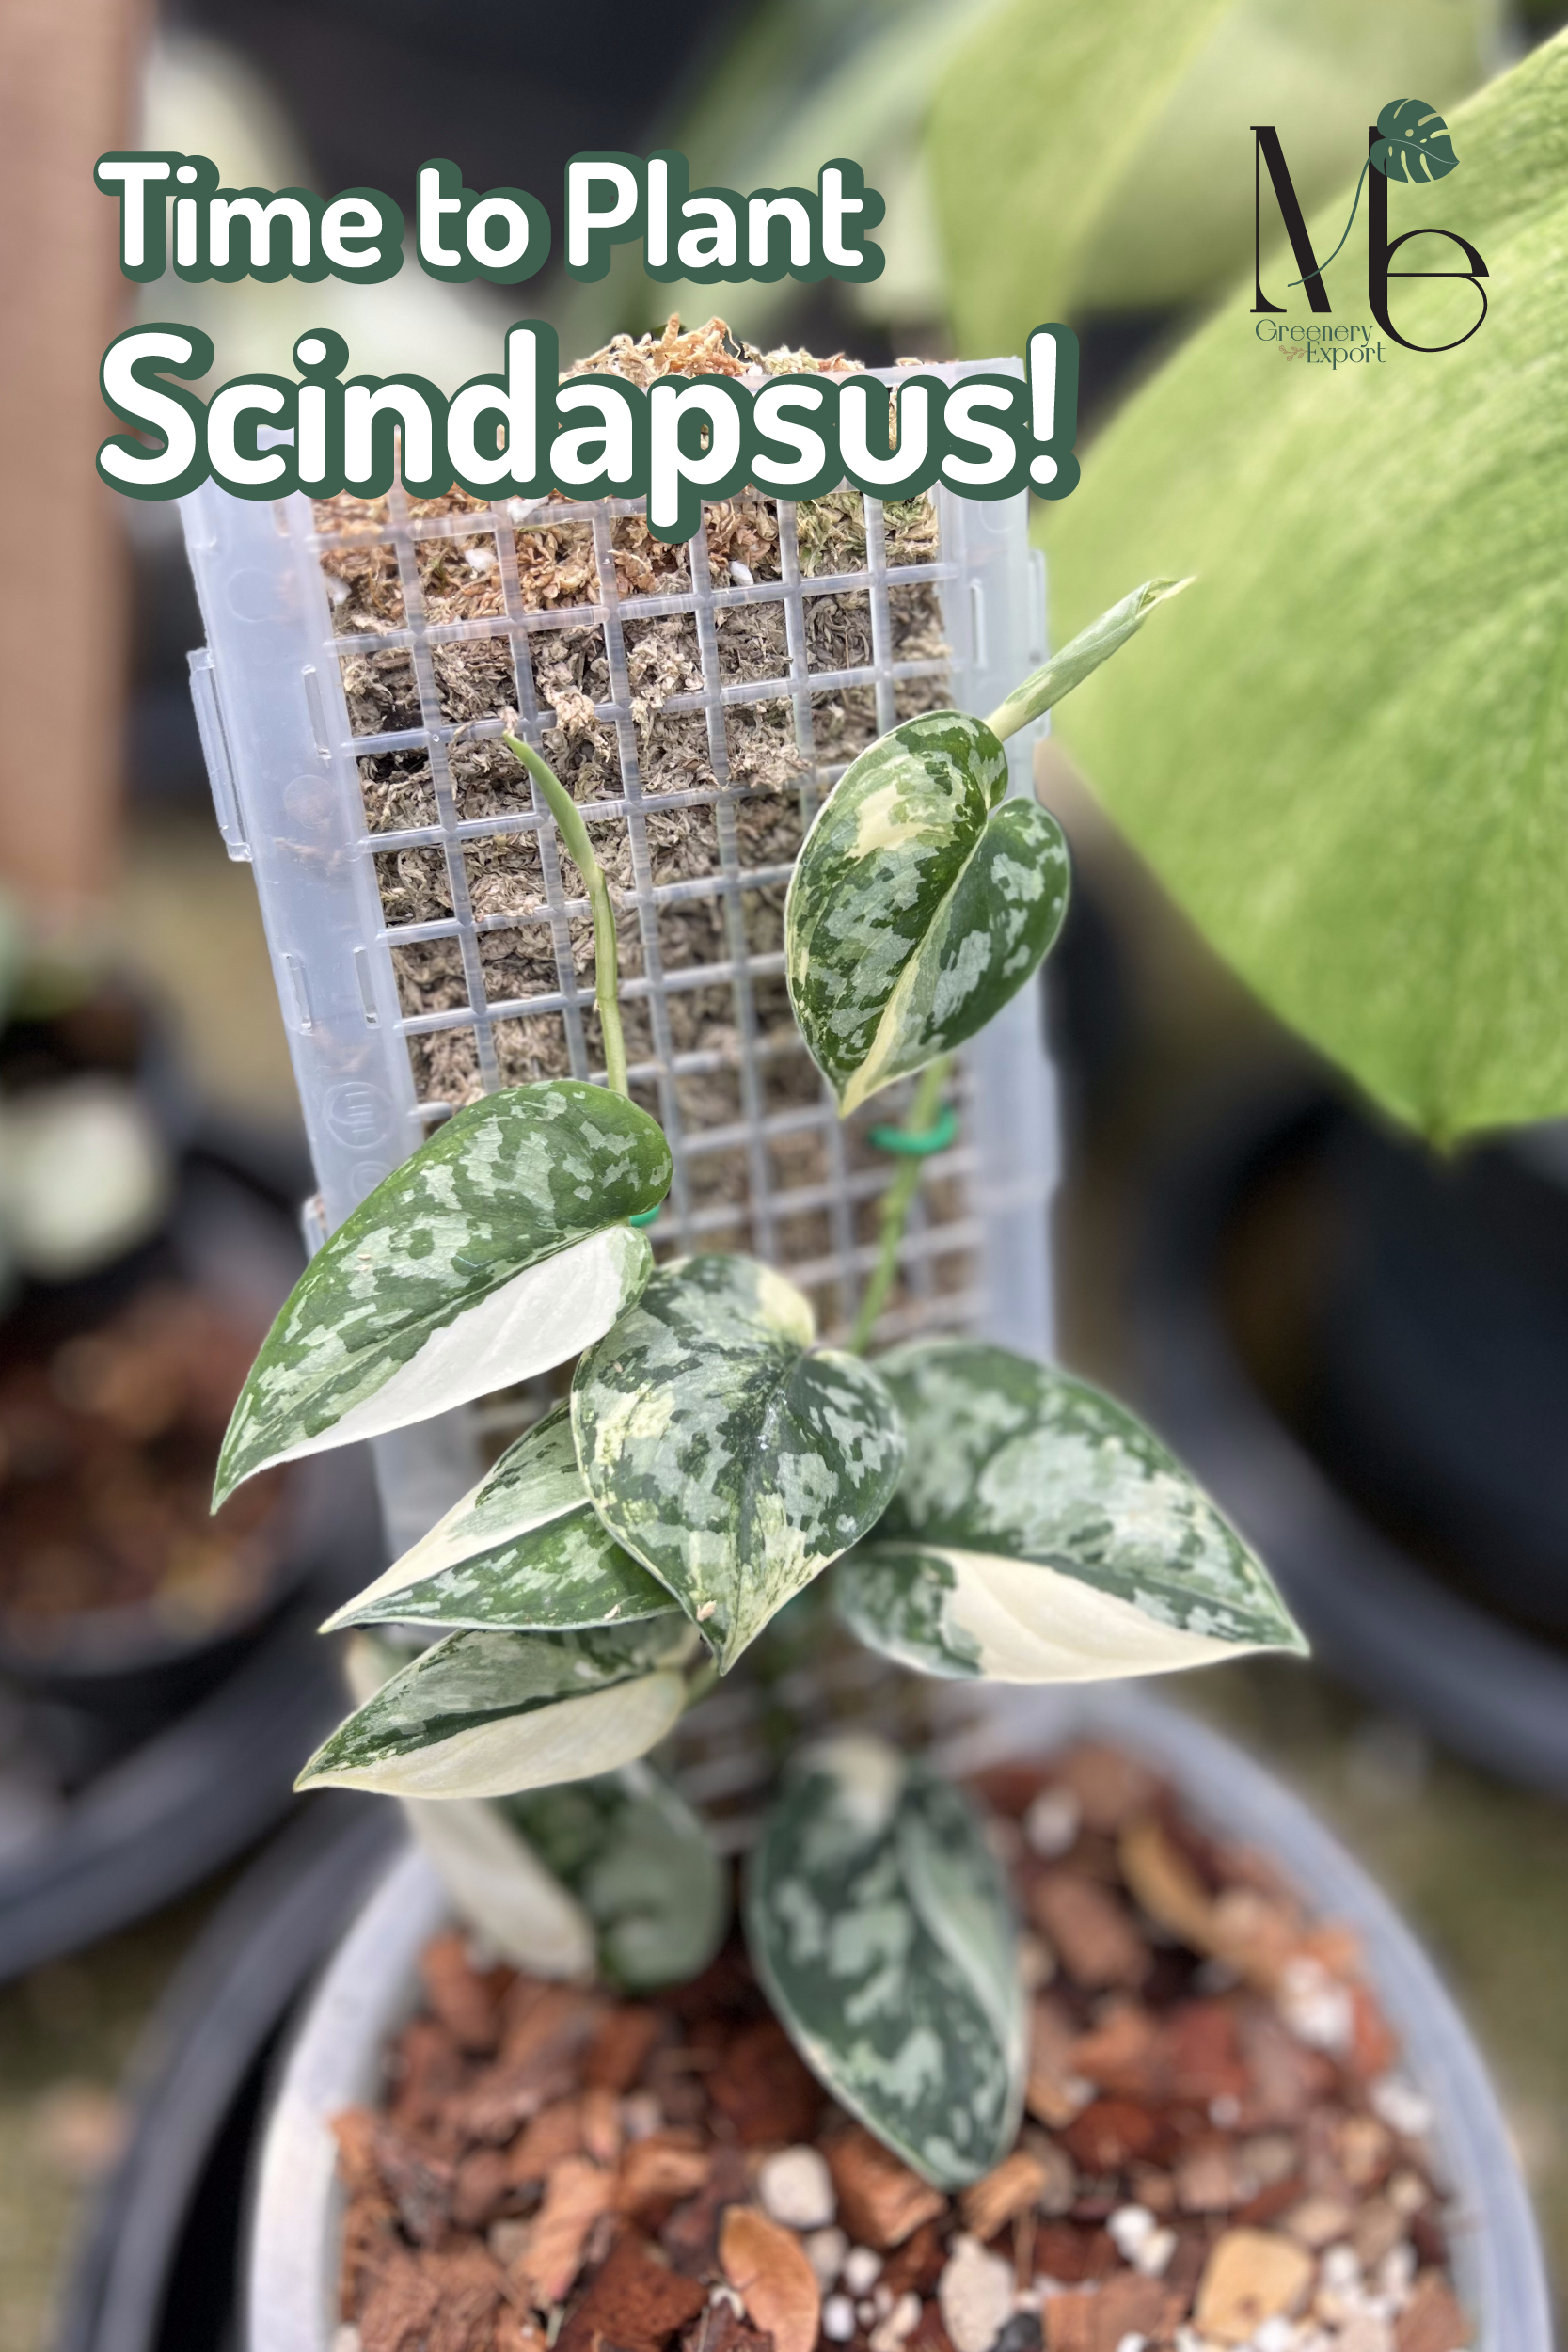 Scindapsus